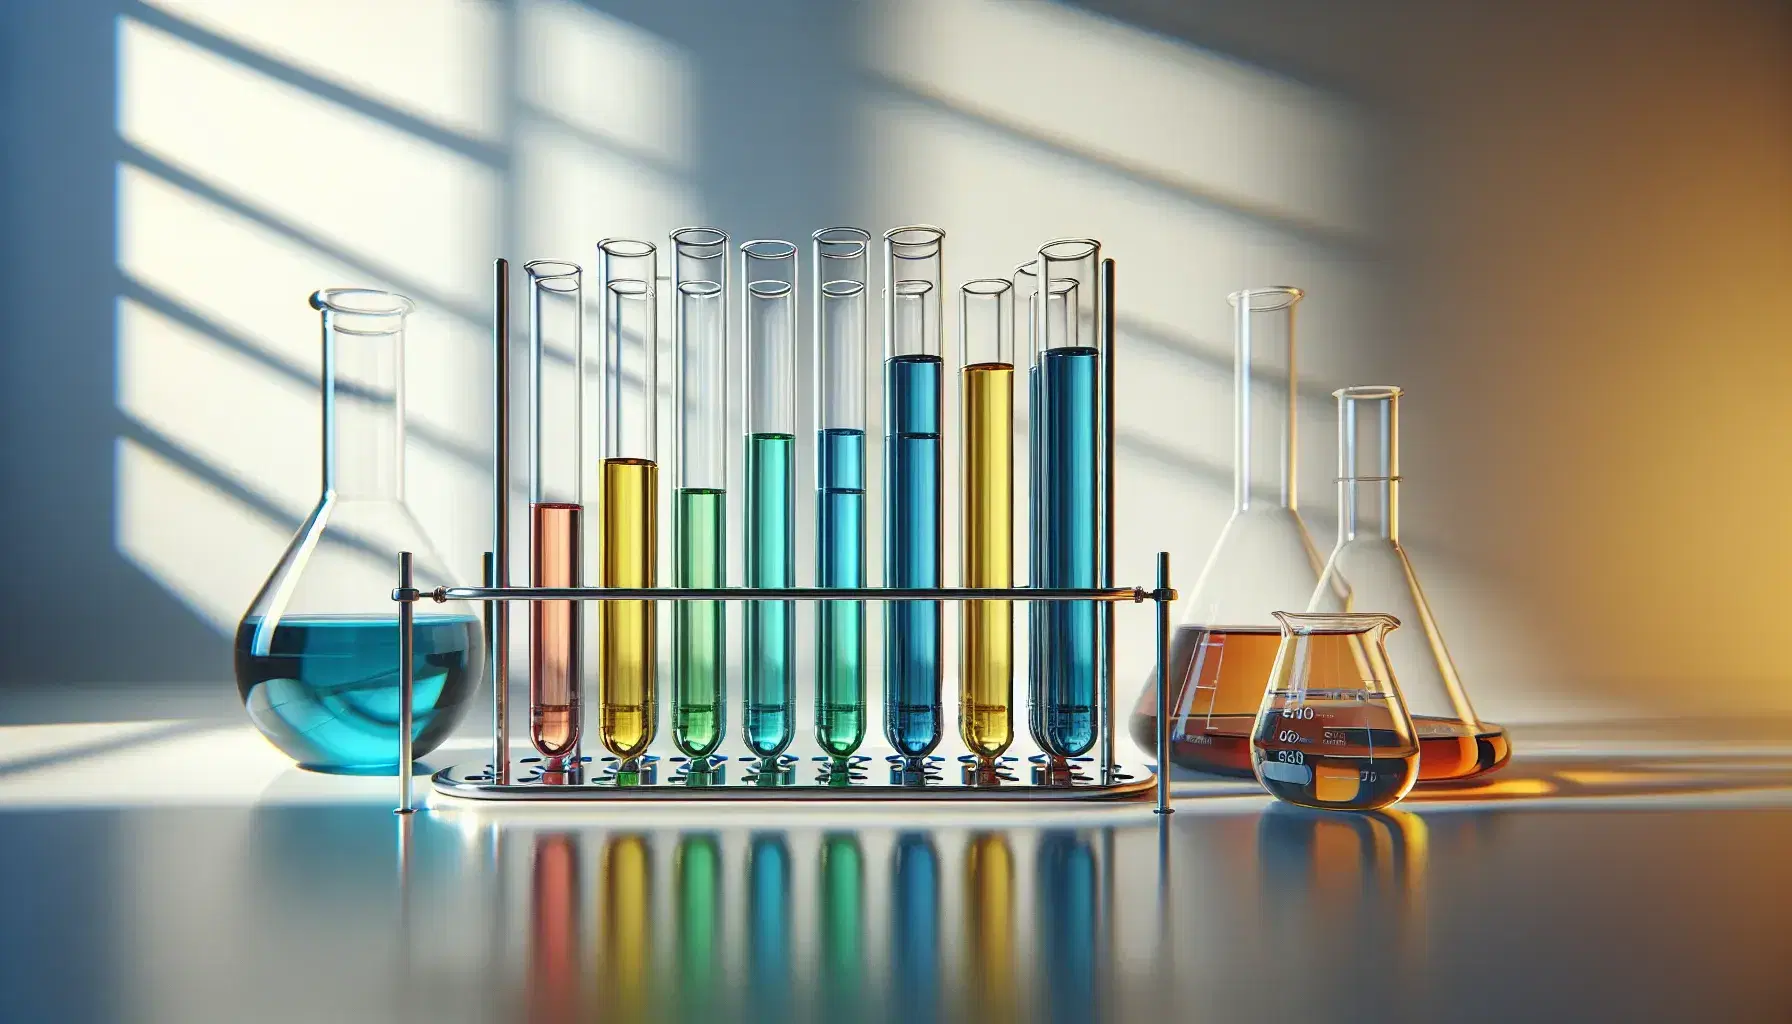 Tubos de ensayo con líquidos de colores azul, verde, amarillo y rojo en soporte metálico, junto a matraz Erlenmeyer y vaso de precipitados en laboratorio.